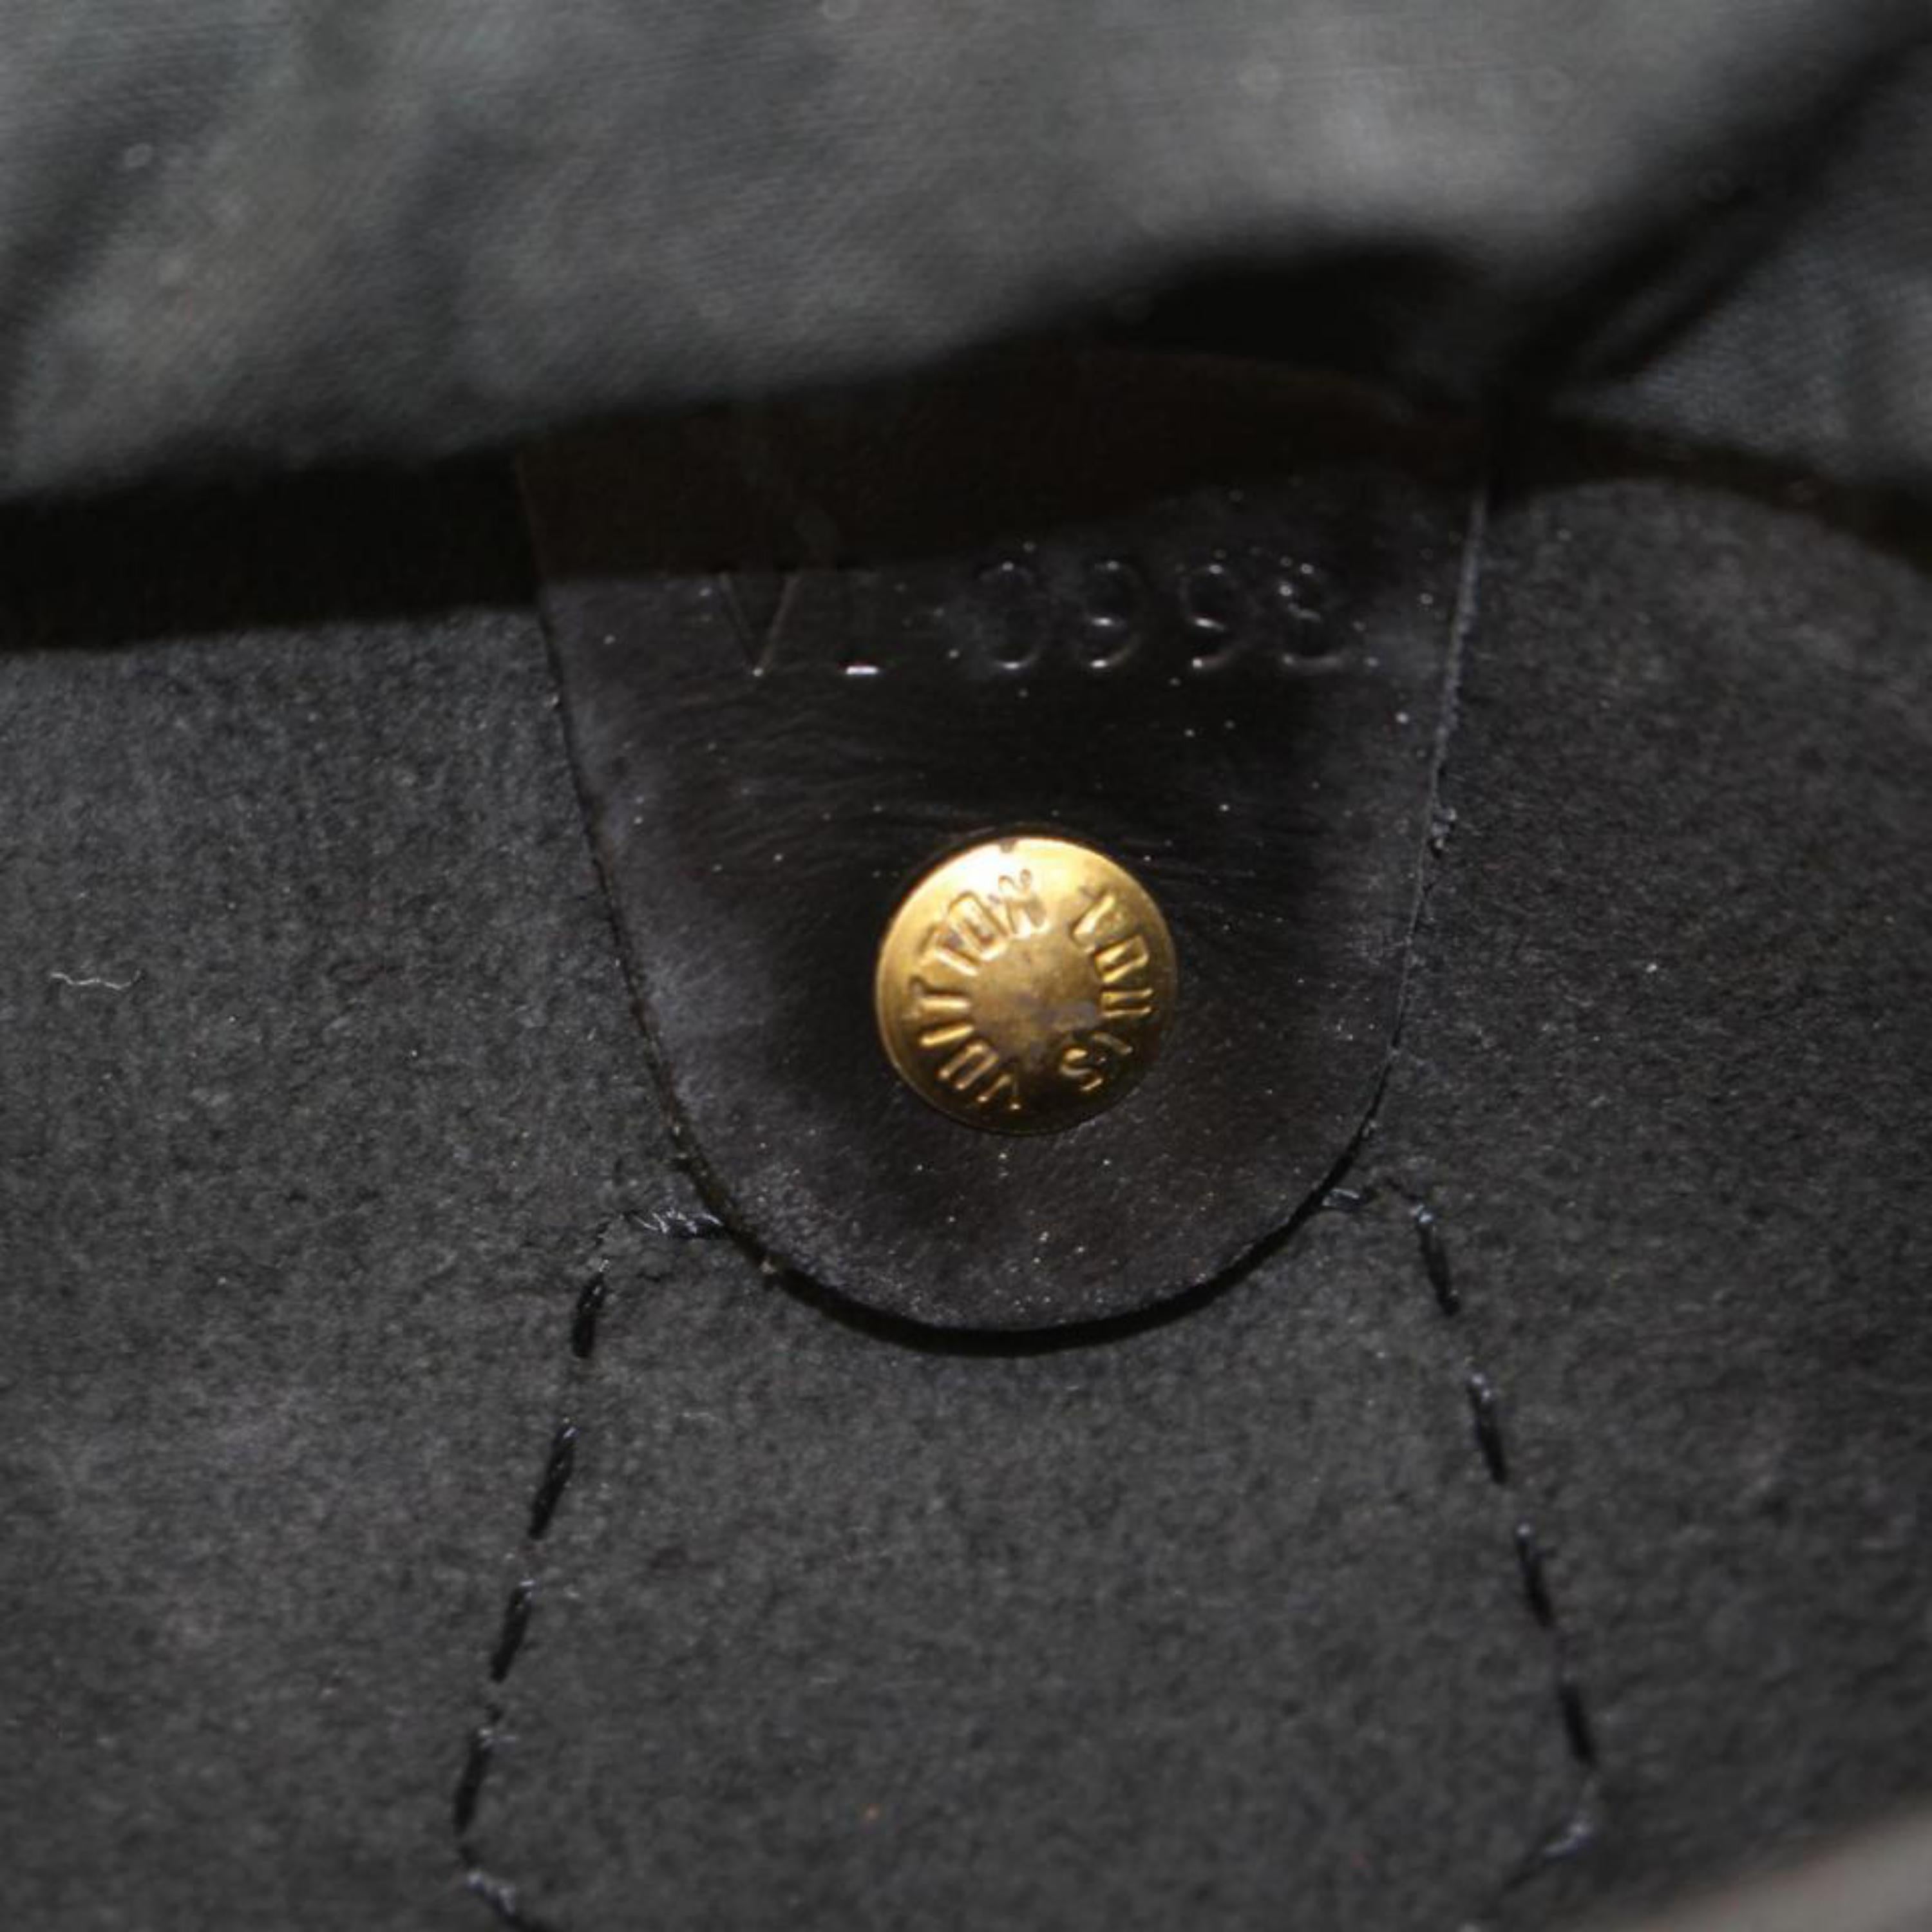 Louis Vuitton Speedy Noir 25 869188 Black Leather Satchel For Sale 7